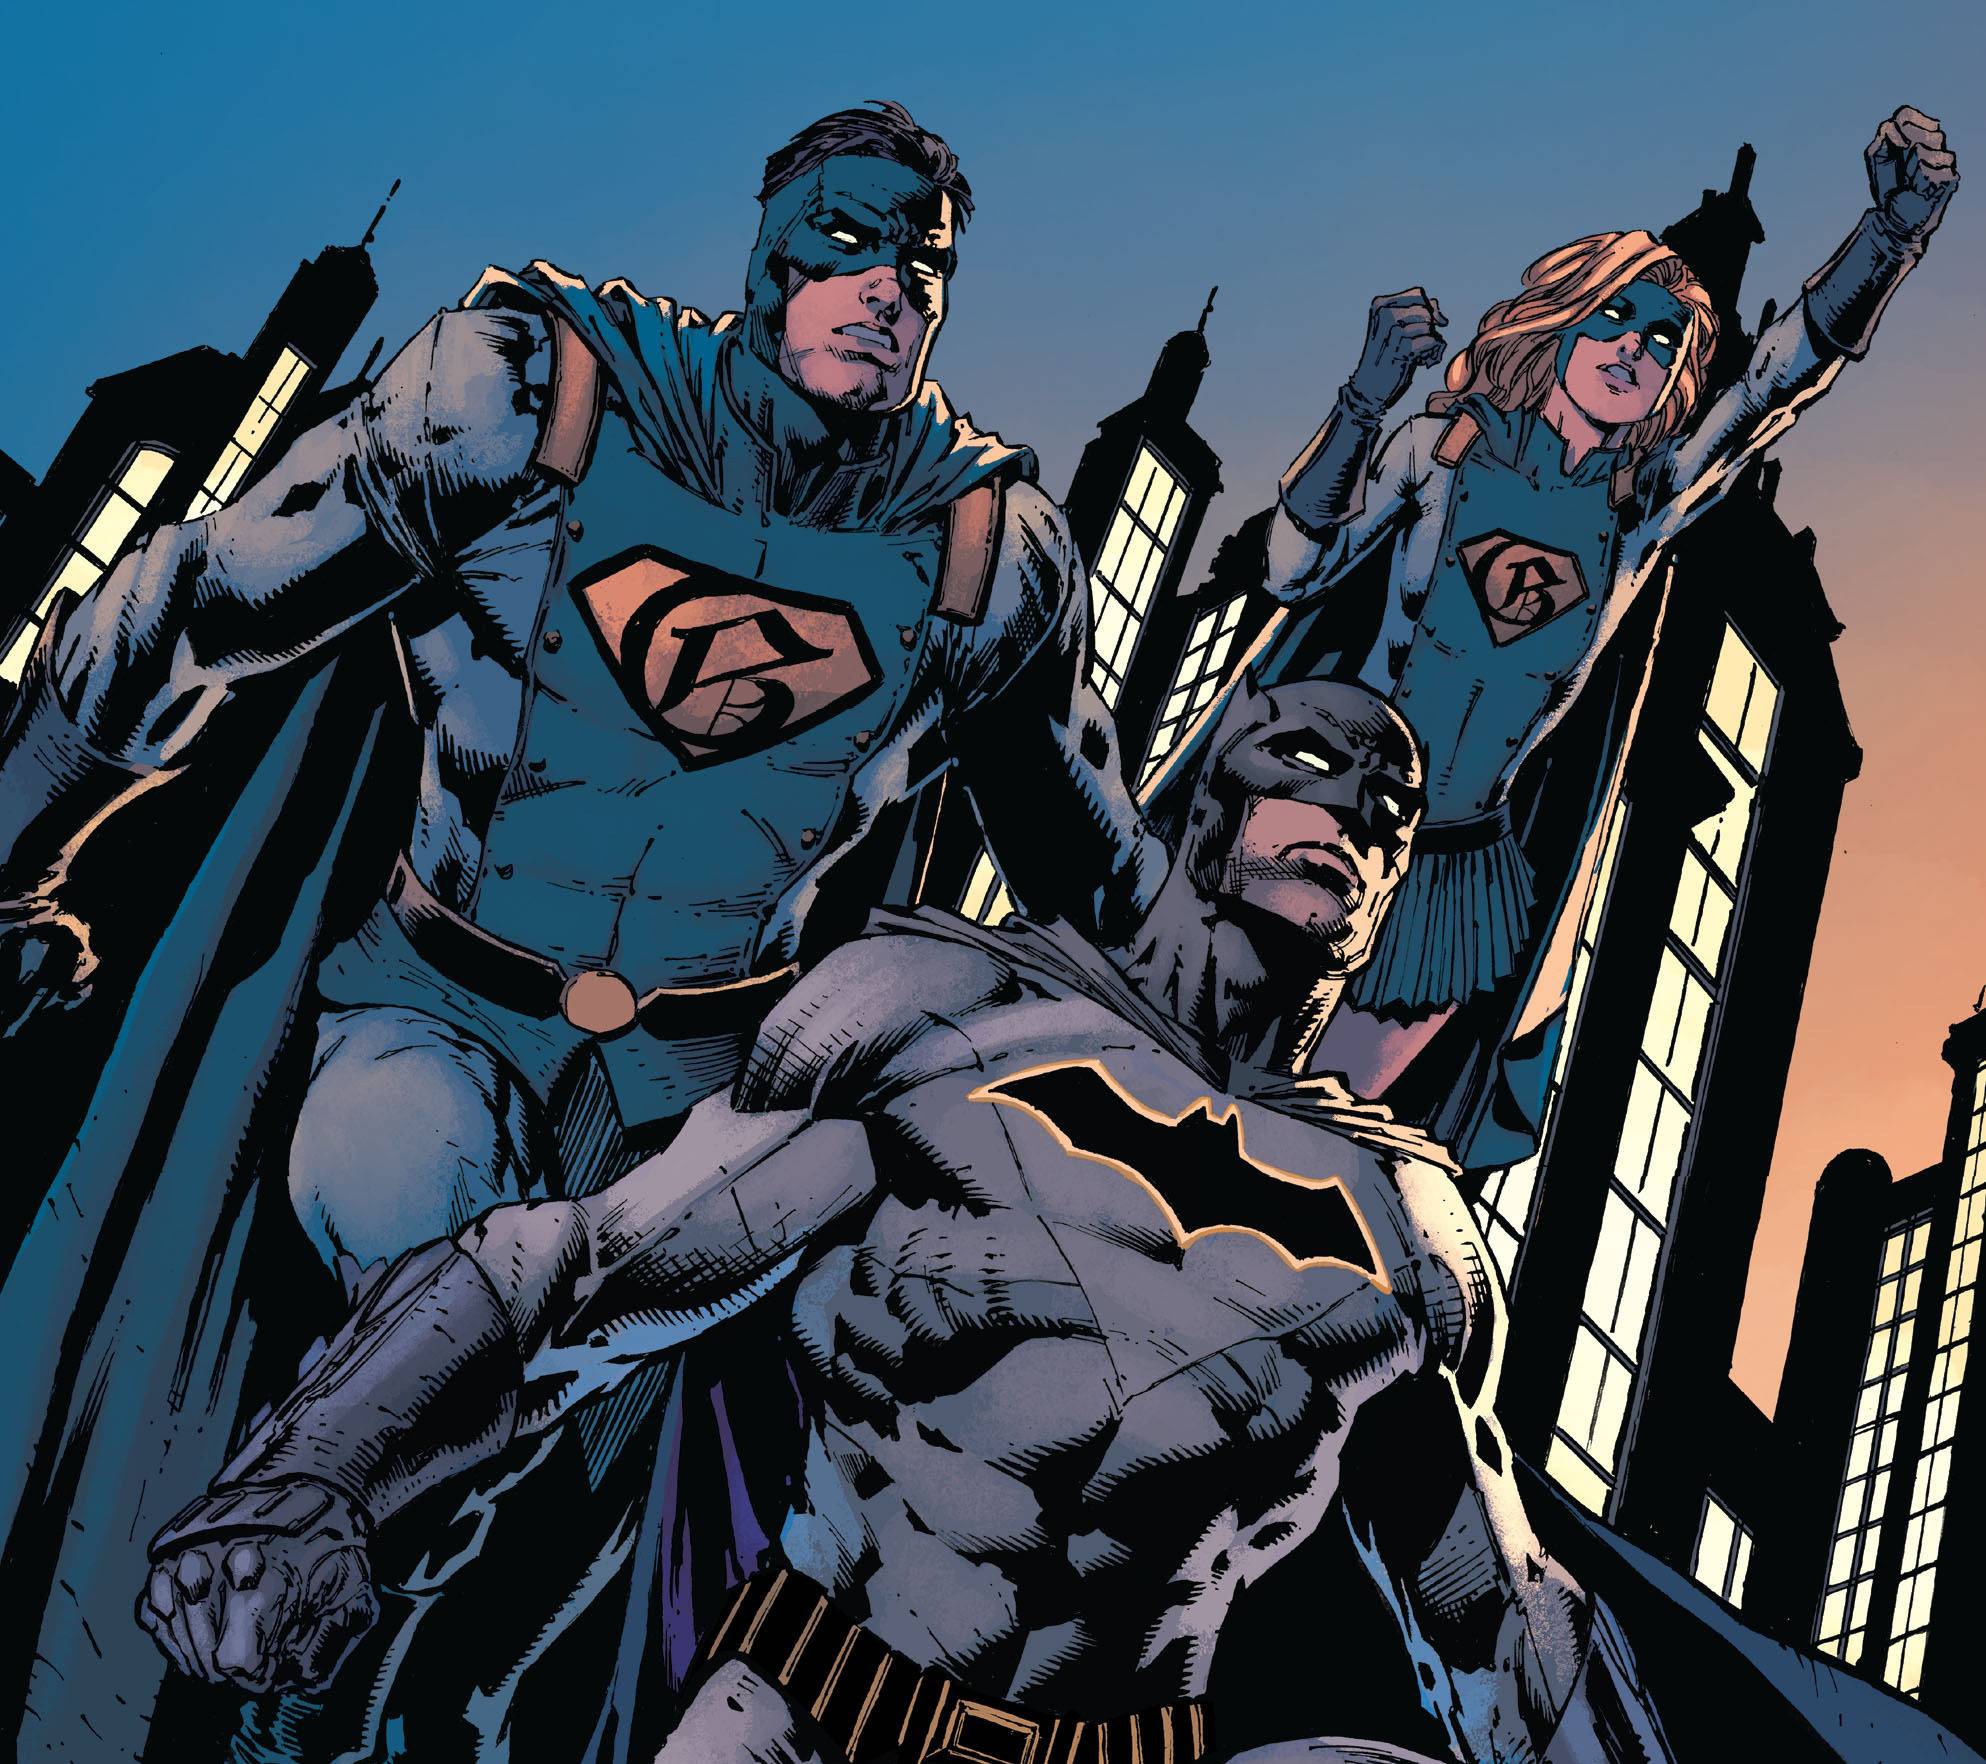 Новые комиксы DC на русском: «Бэтмен: Я — Готэм» и «Injustice. Боги среди нас. Год второй» 2